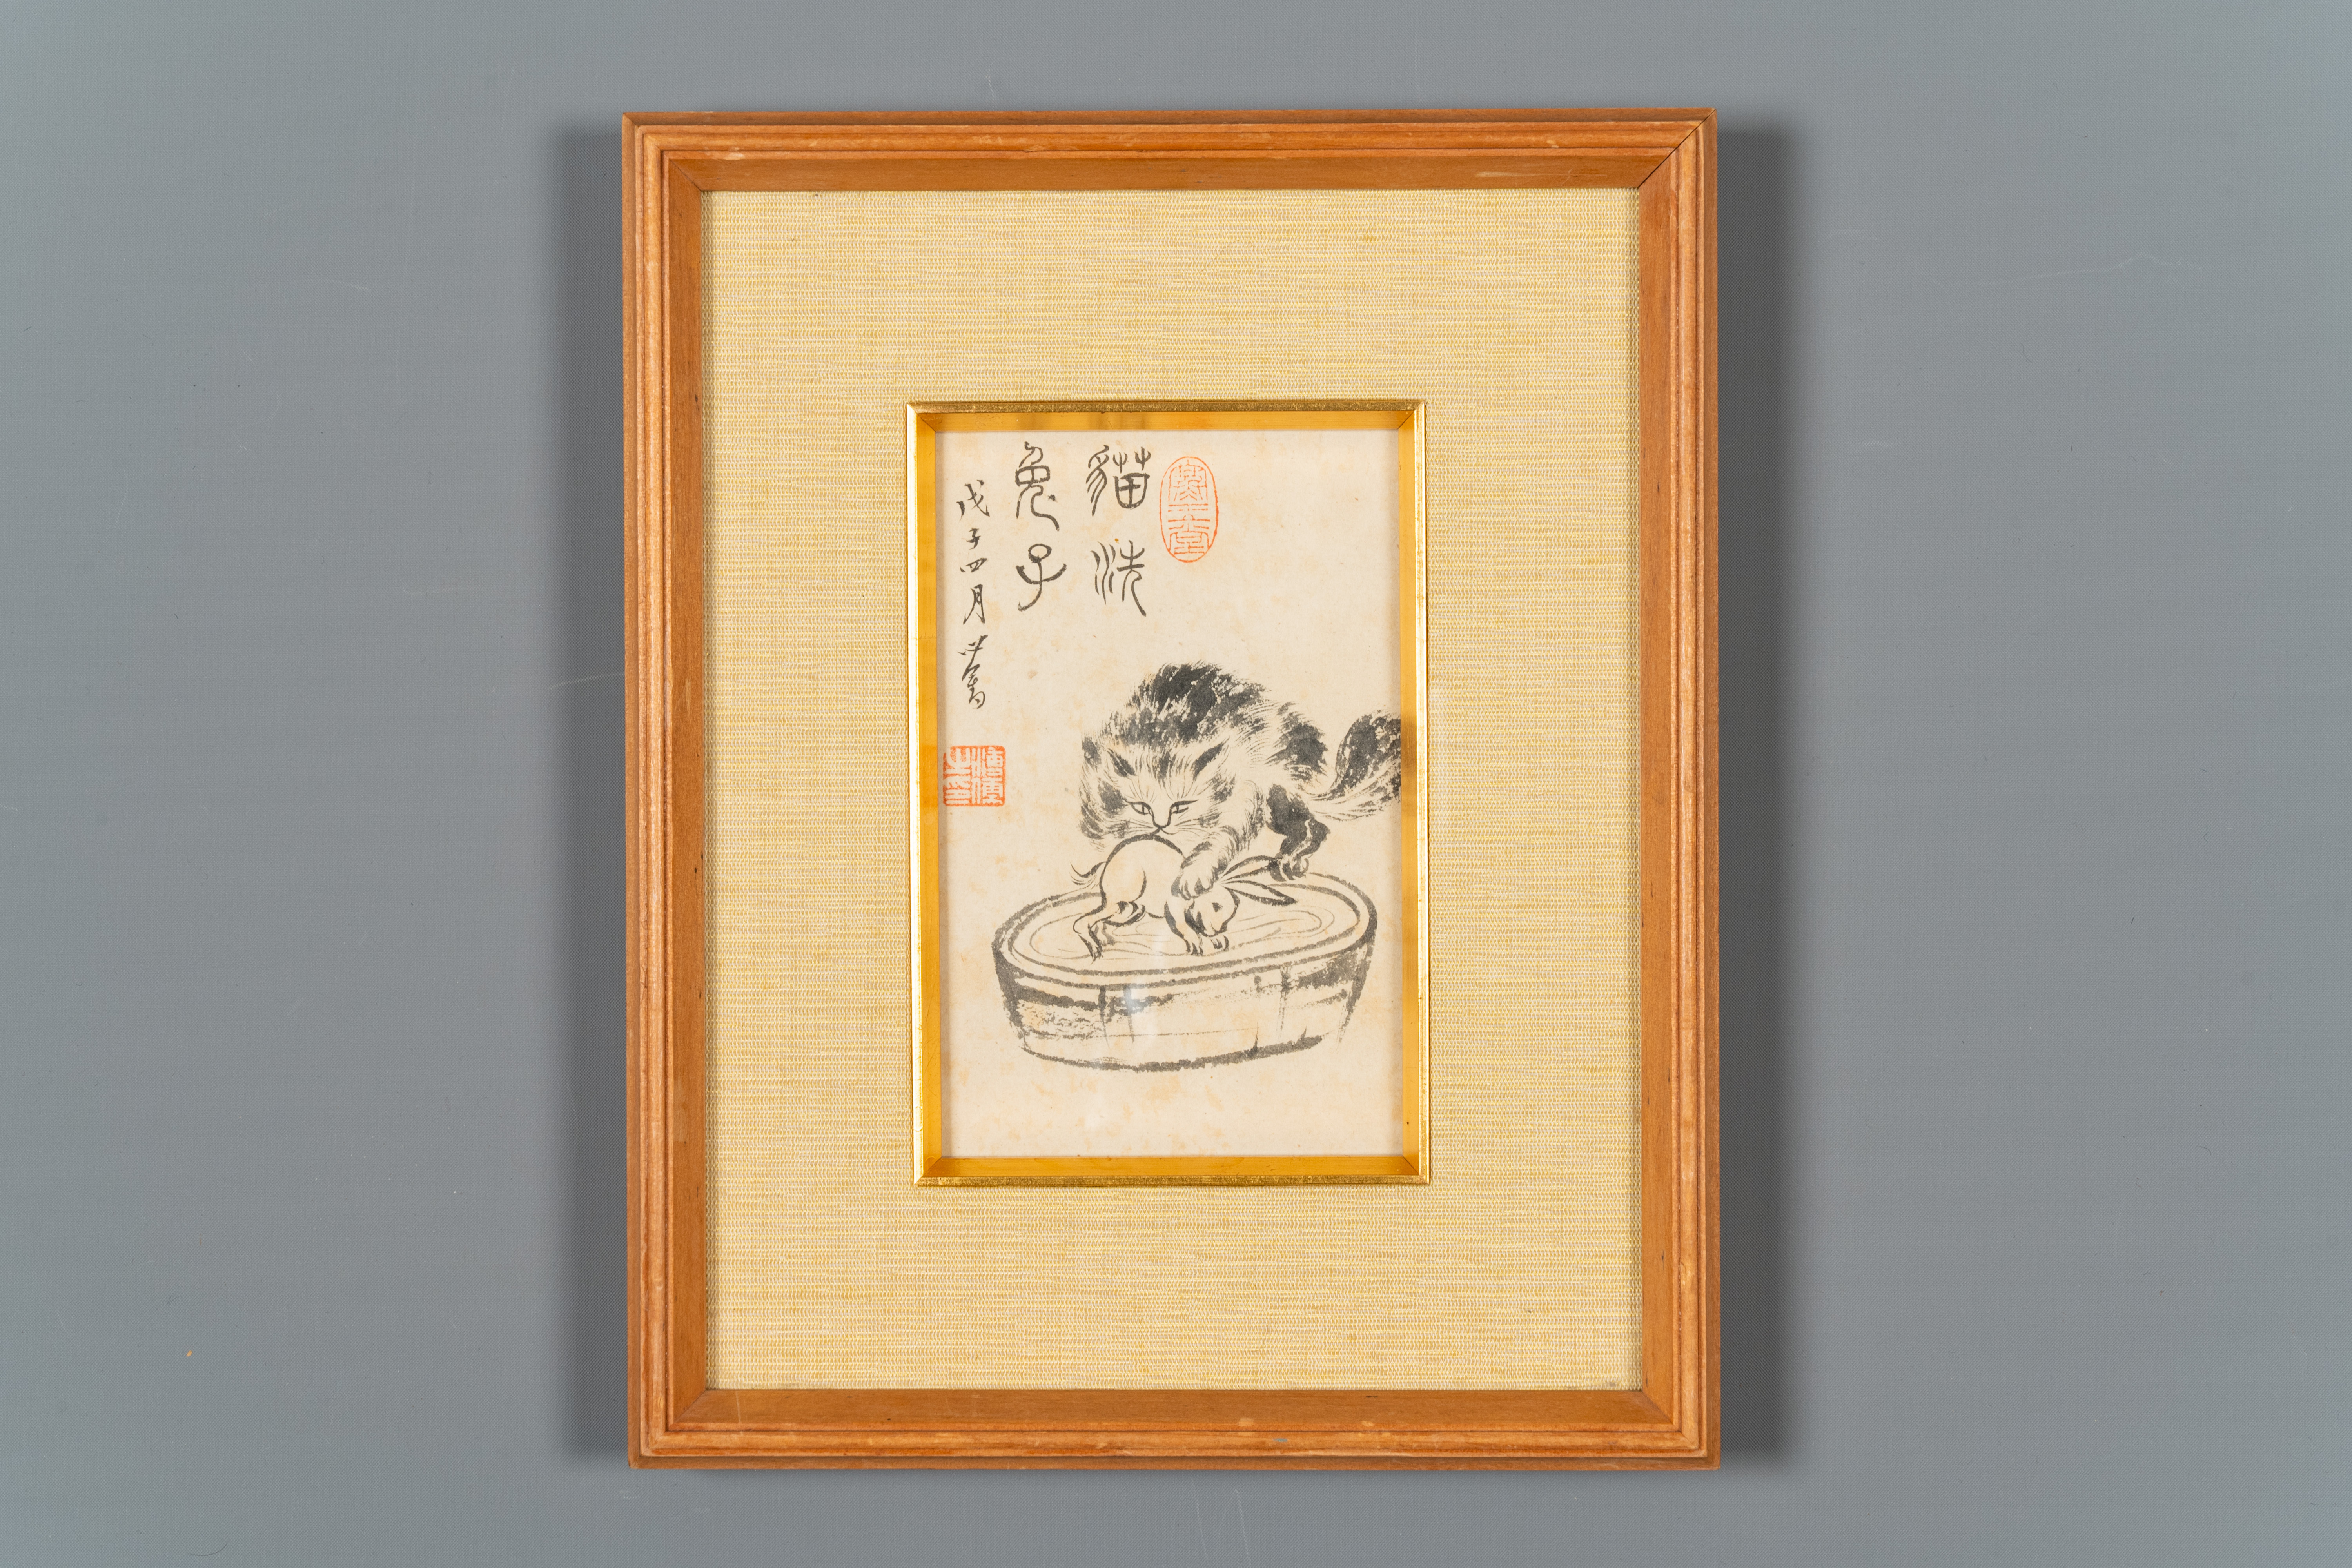 Pu Xinyu æº¥å¿ƒç•¬ (1896-1963): 'Cat and rabbit' and Wu Xizeng å³ç†™æ›¾ (1904-1972): 'Landscape', i - Image 4 of 4